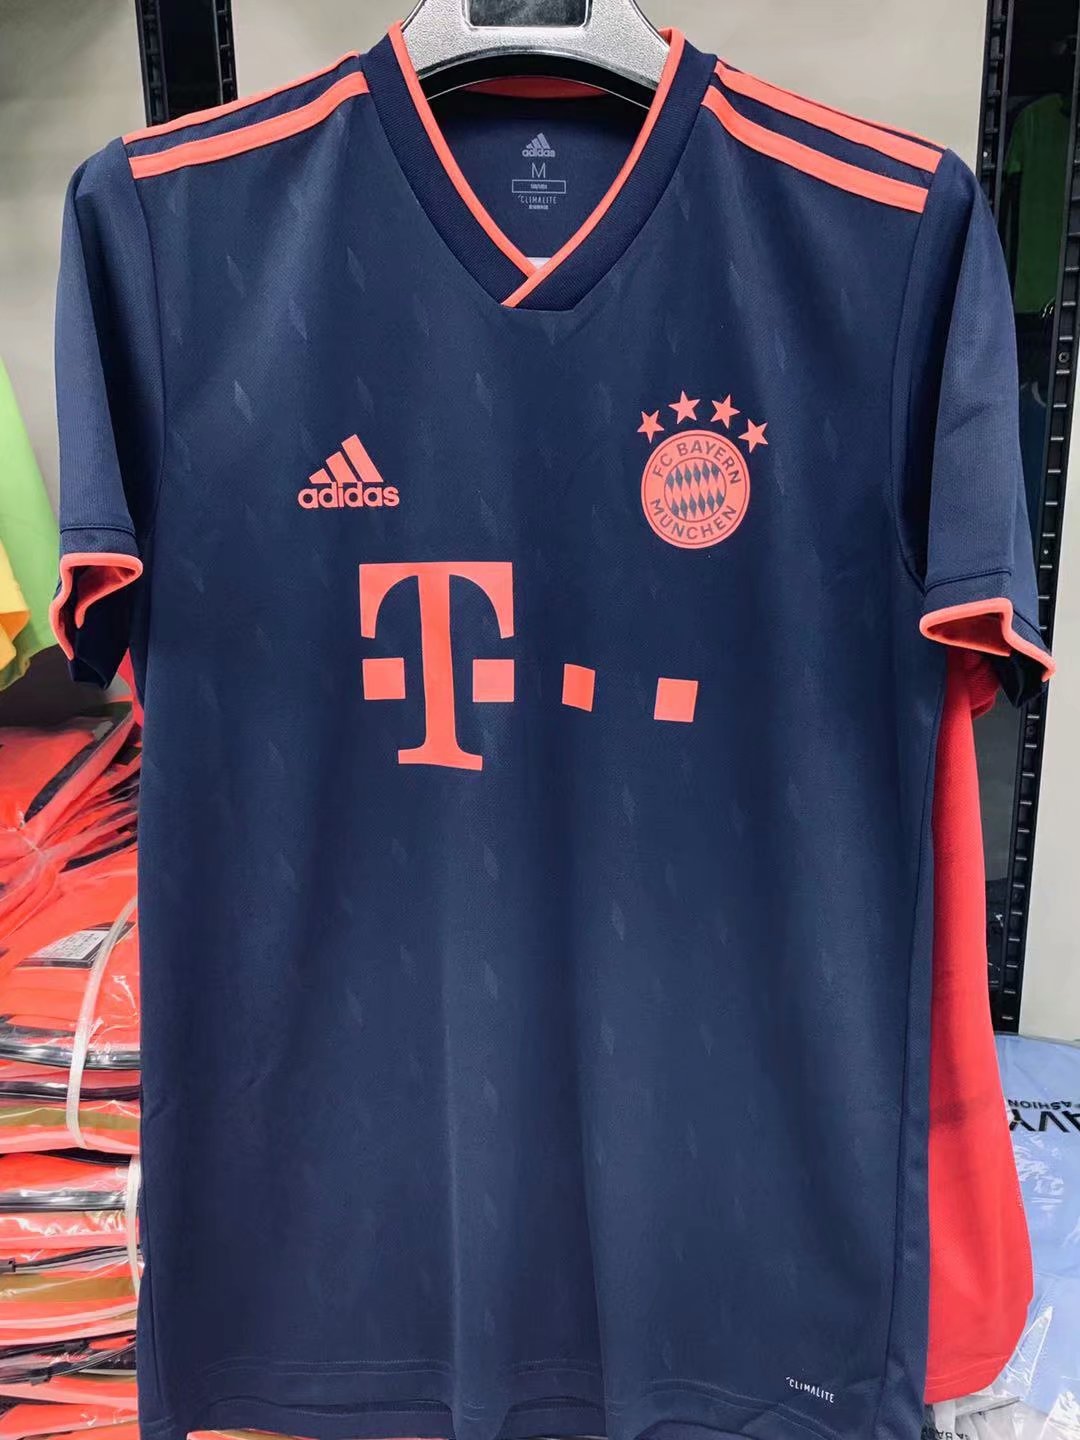 bayern munich shirt 2019